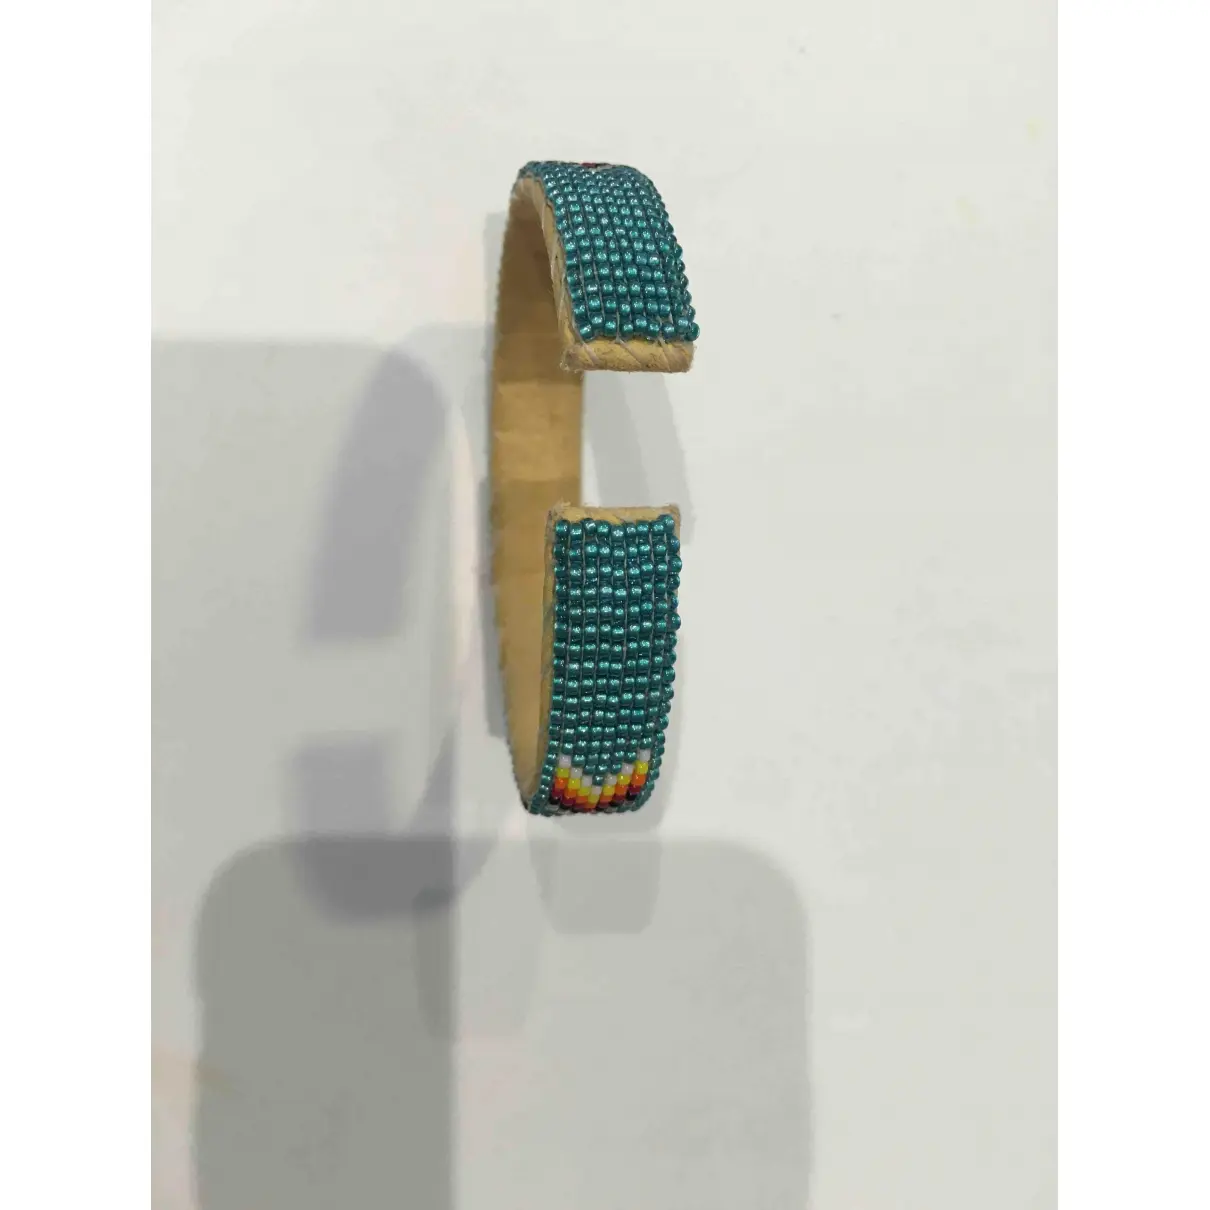 Harpo Pearl bracelet for sale